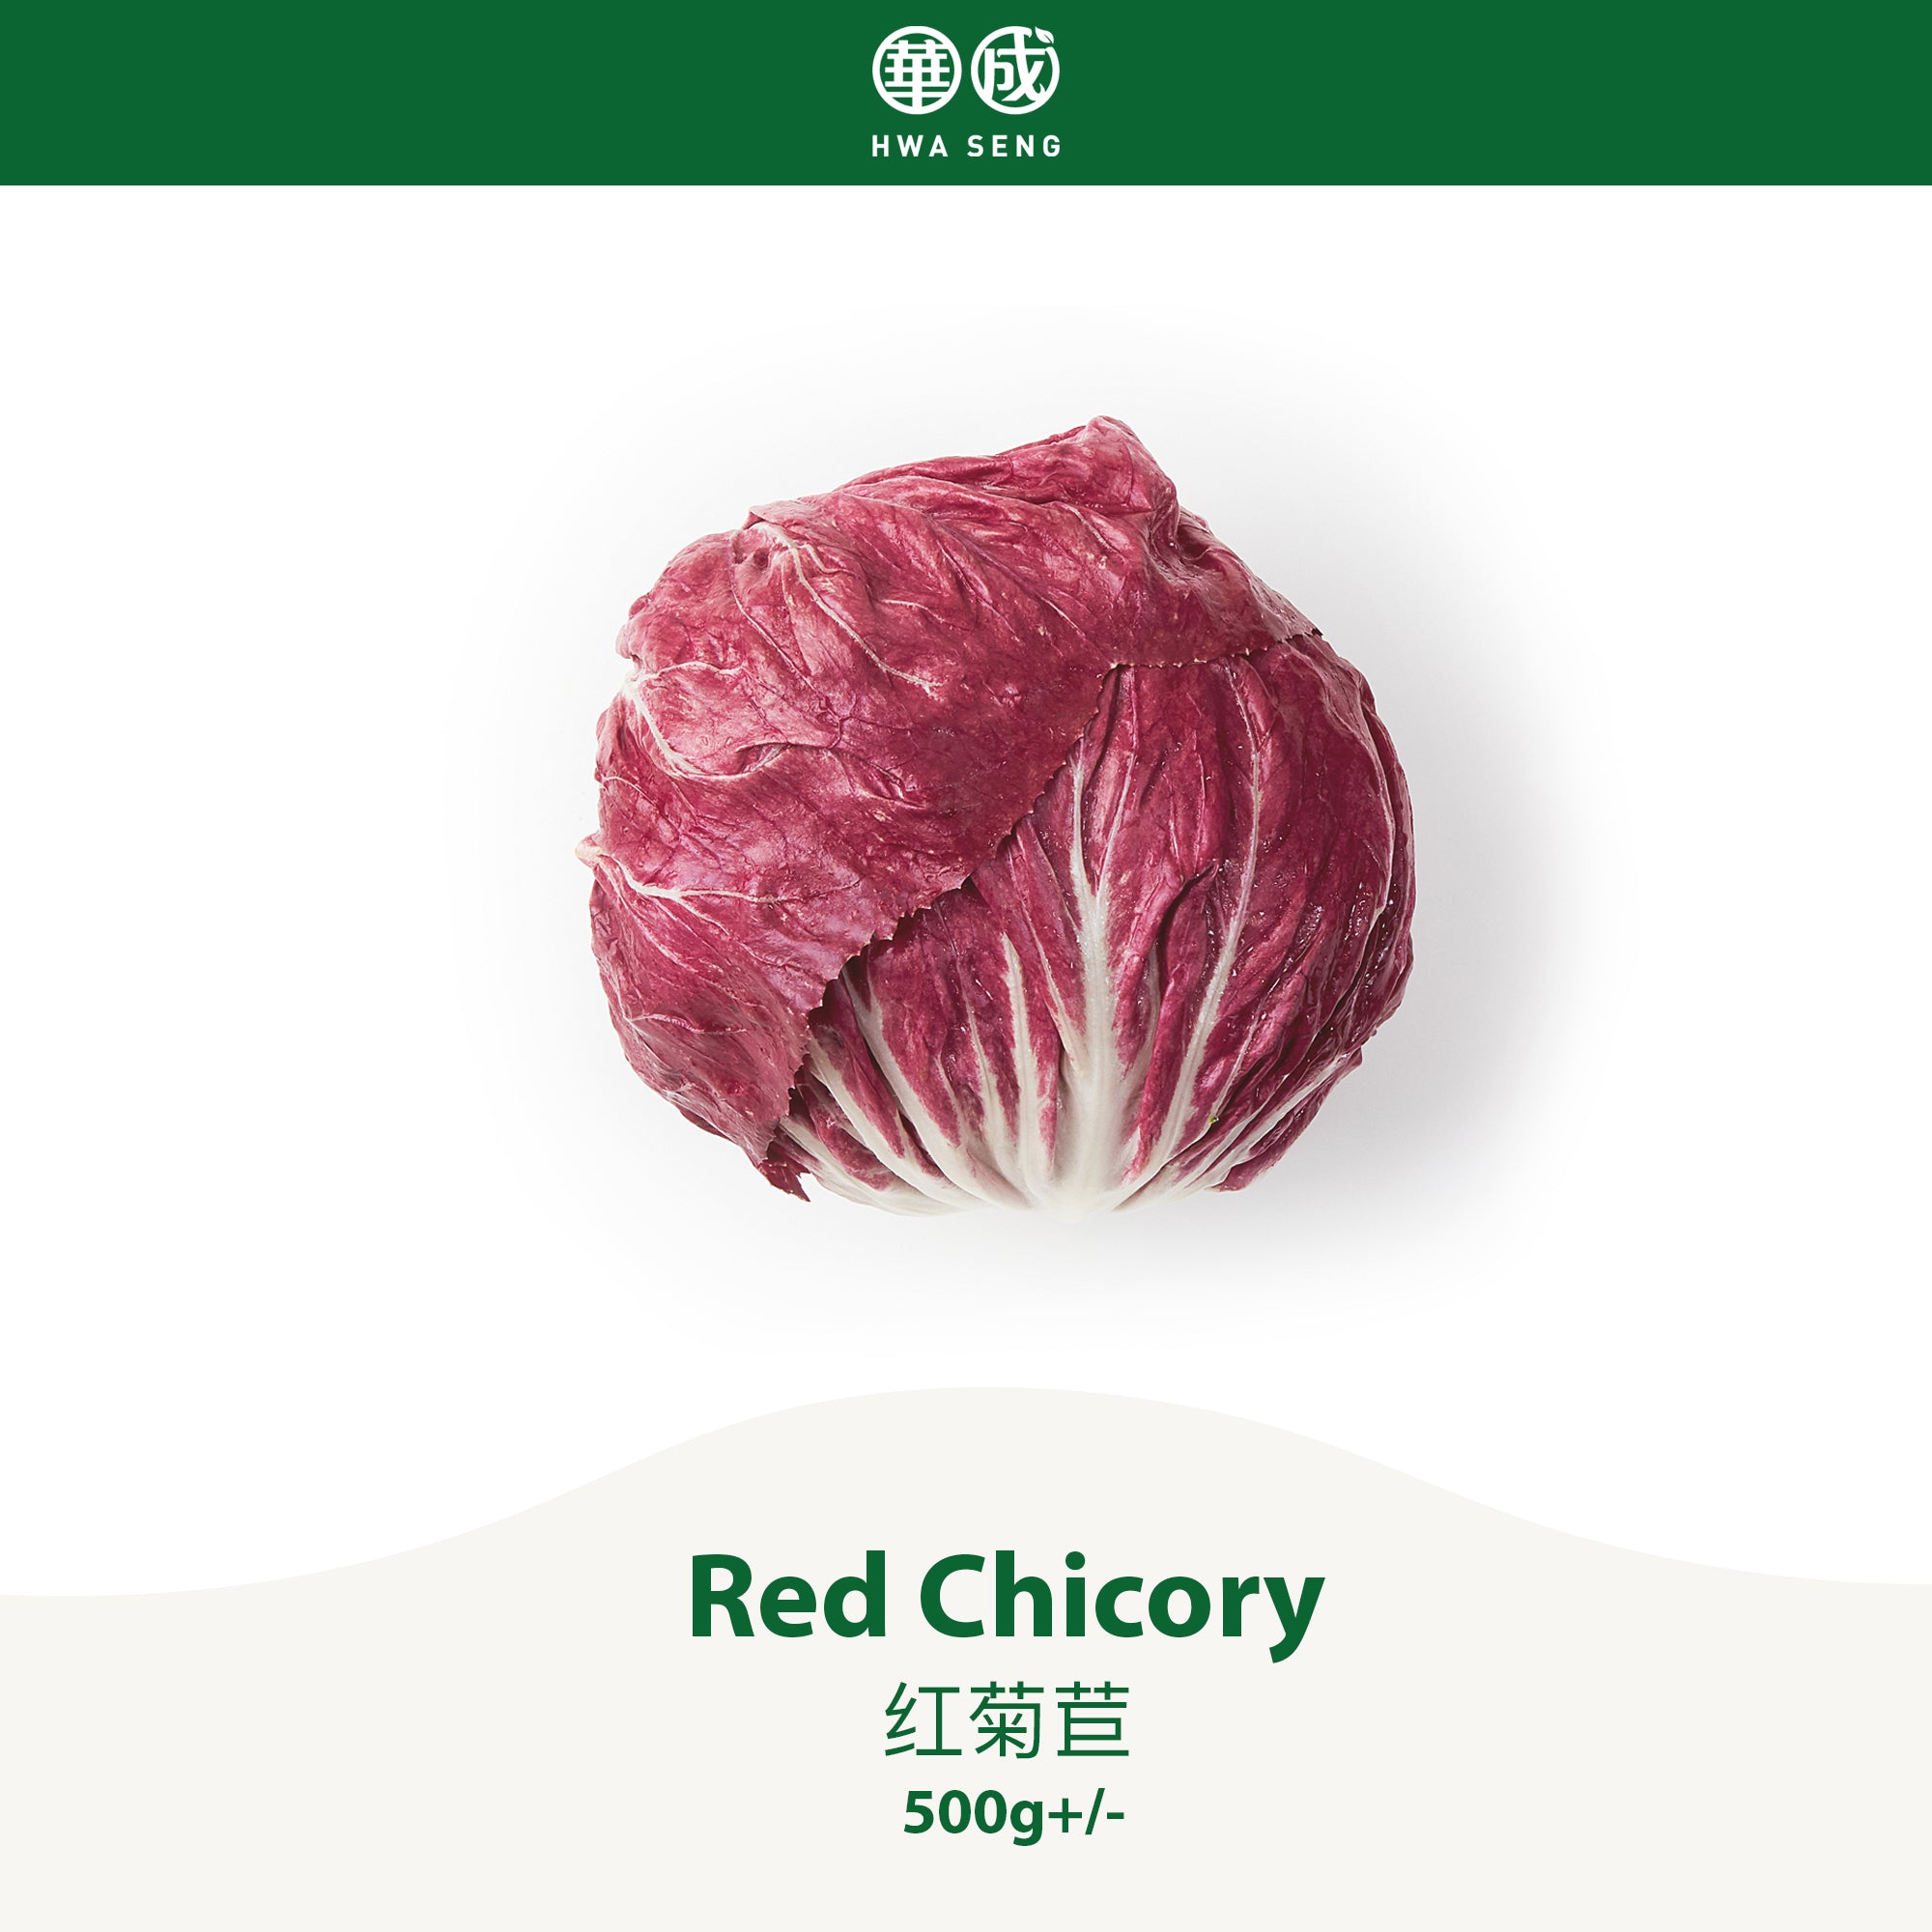 Red Chicory 红菊苣 500g+/-